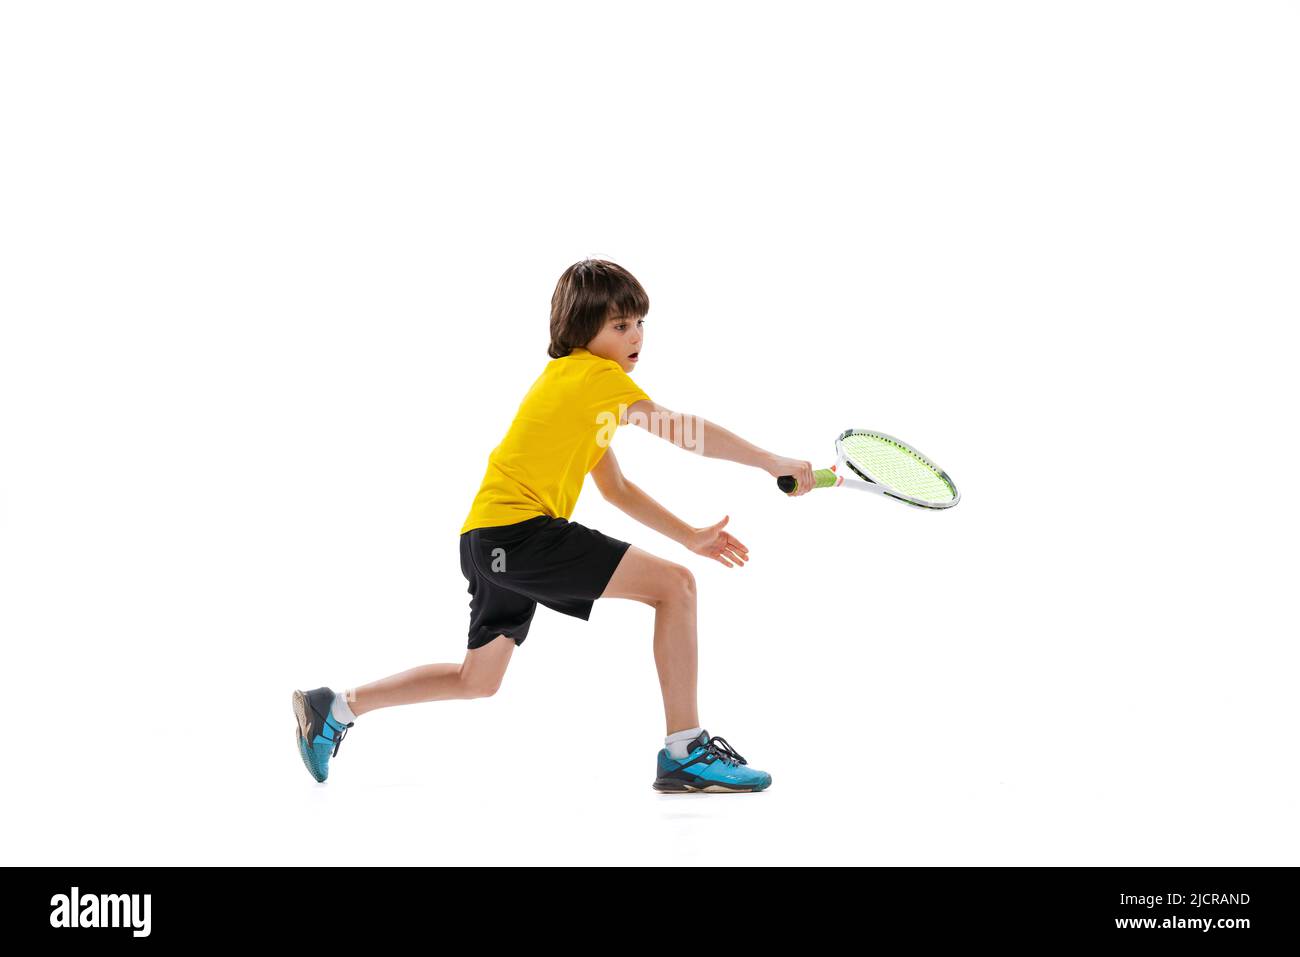 Dynamisches Porträt eines Jugendlichen, sportlichen Kindes, das Tennis spielt, isoliert auf weißem Studiohintergrund. Konzept von Sport, Leistungen, Hobby, Können Stockfoto